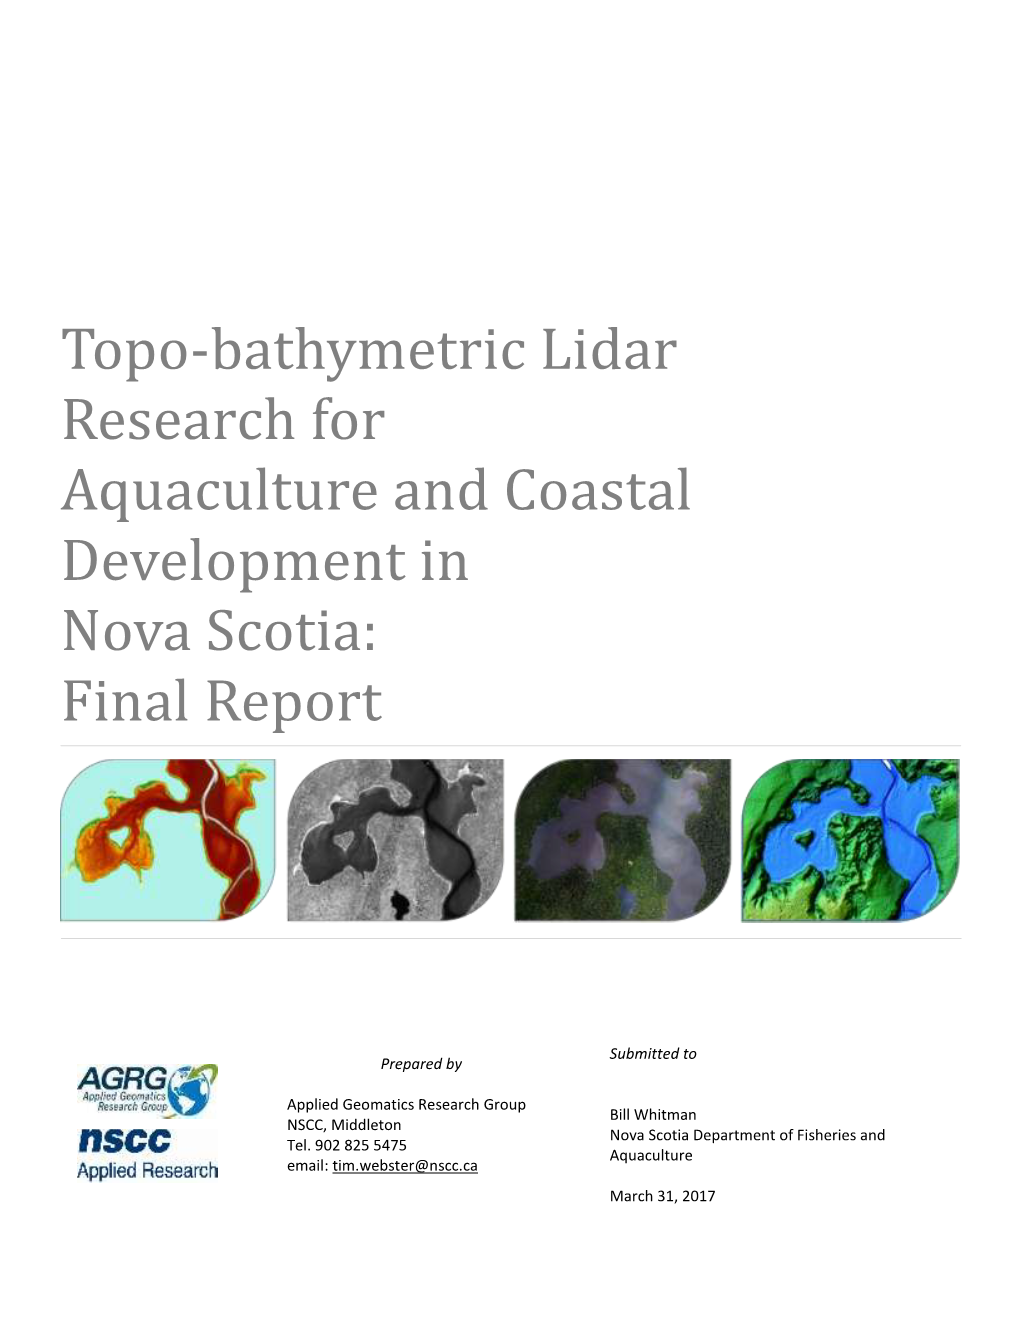 Topo-Bathymetric Lidar Research for Aquaculture and Coastal Development in Nova Scotia: Final Report